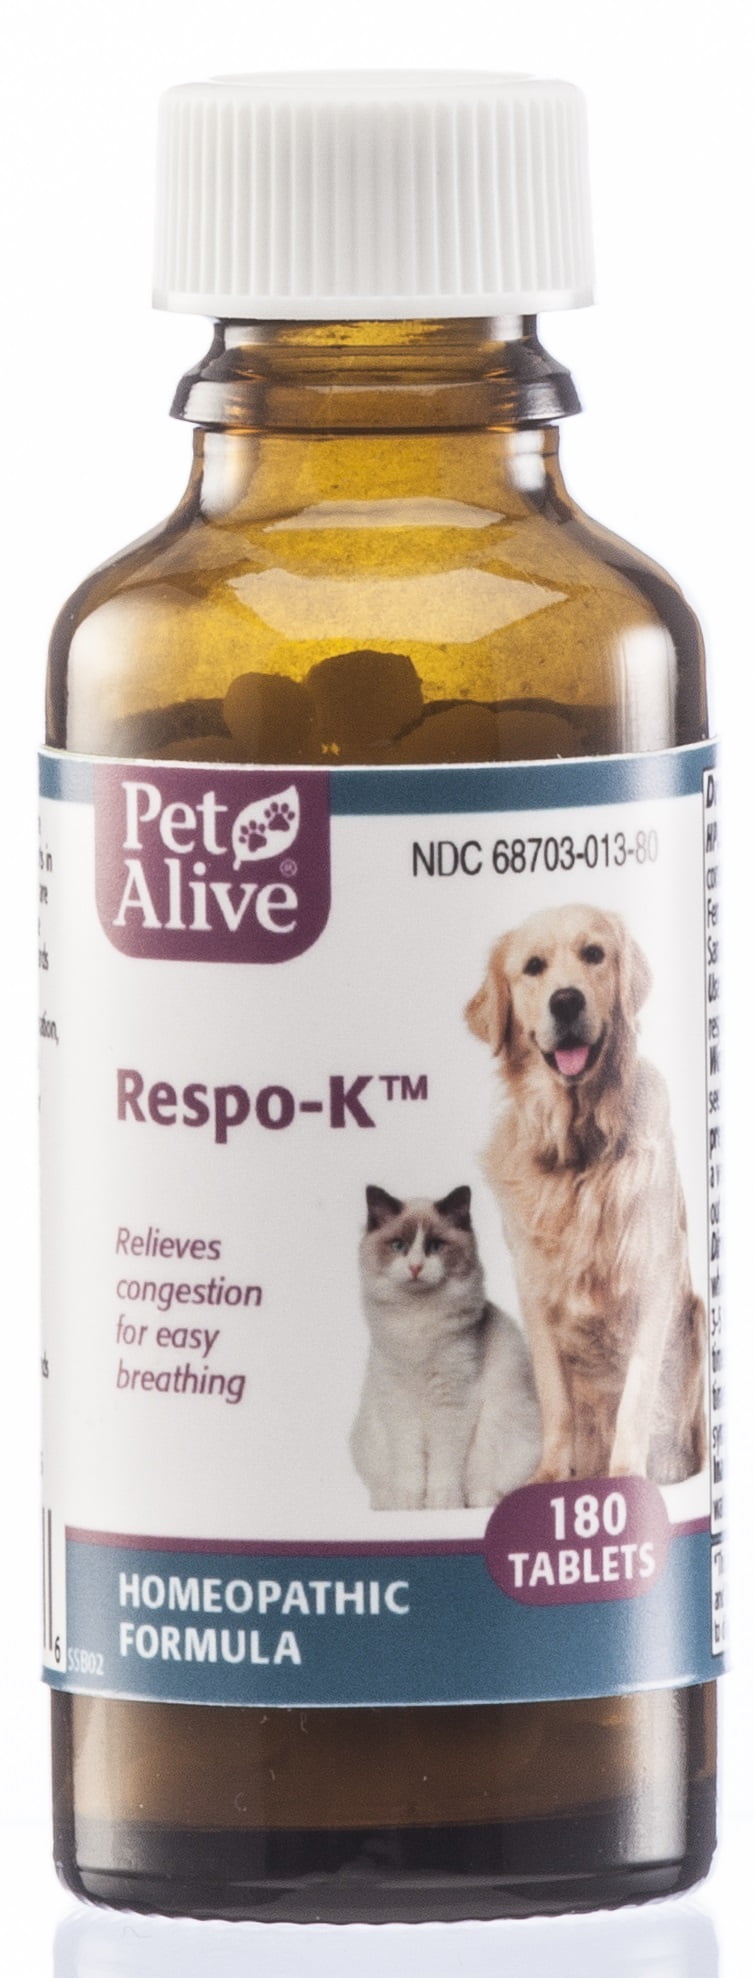 PetAlive RespoK Tablets Natural Homeopathic Formula for Pet